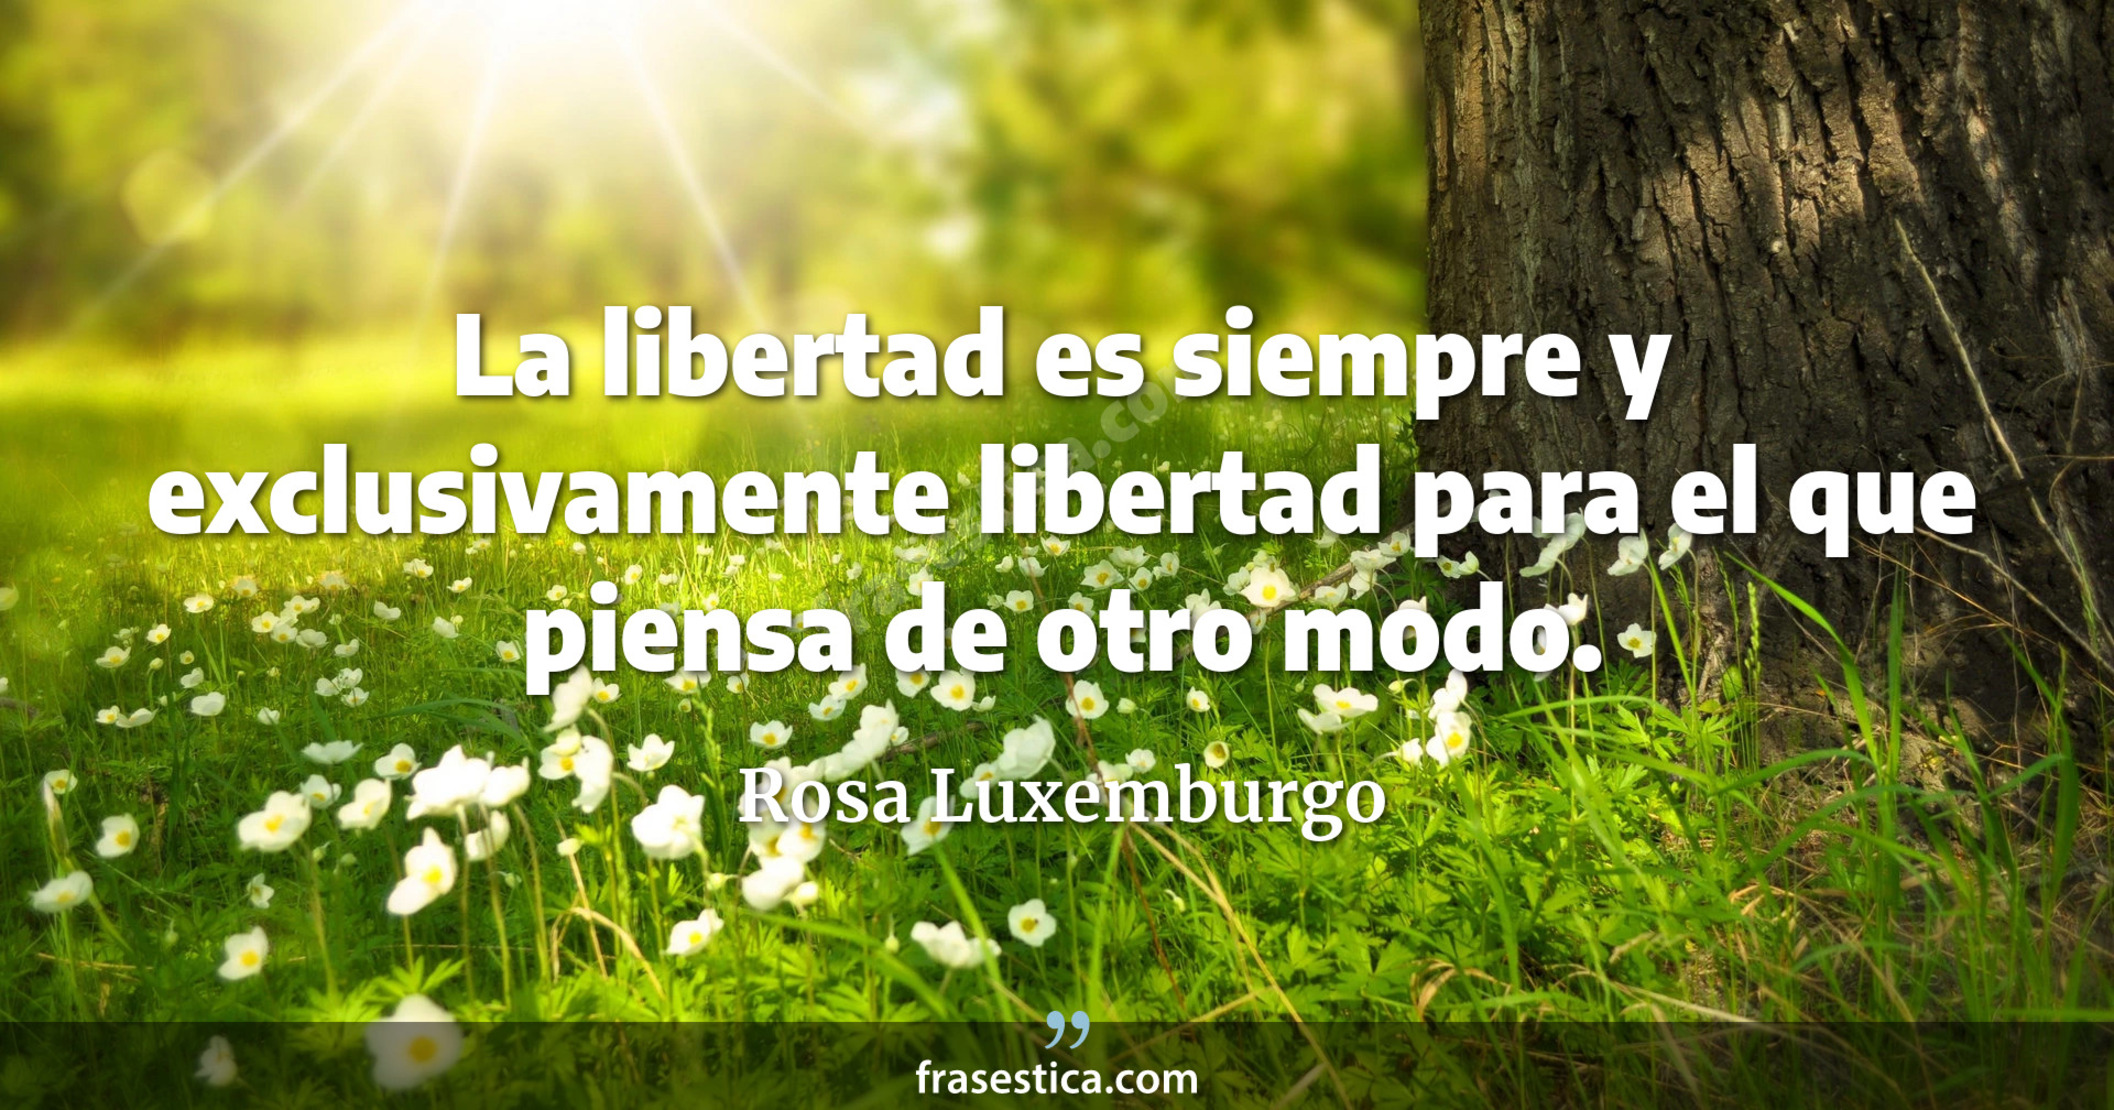 La libertad es siempre y exclusivamente libertad para el que piensa de otro modo. - Rosa Luxemburgo